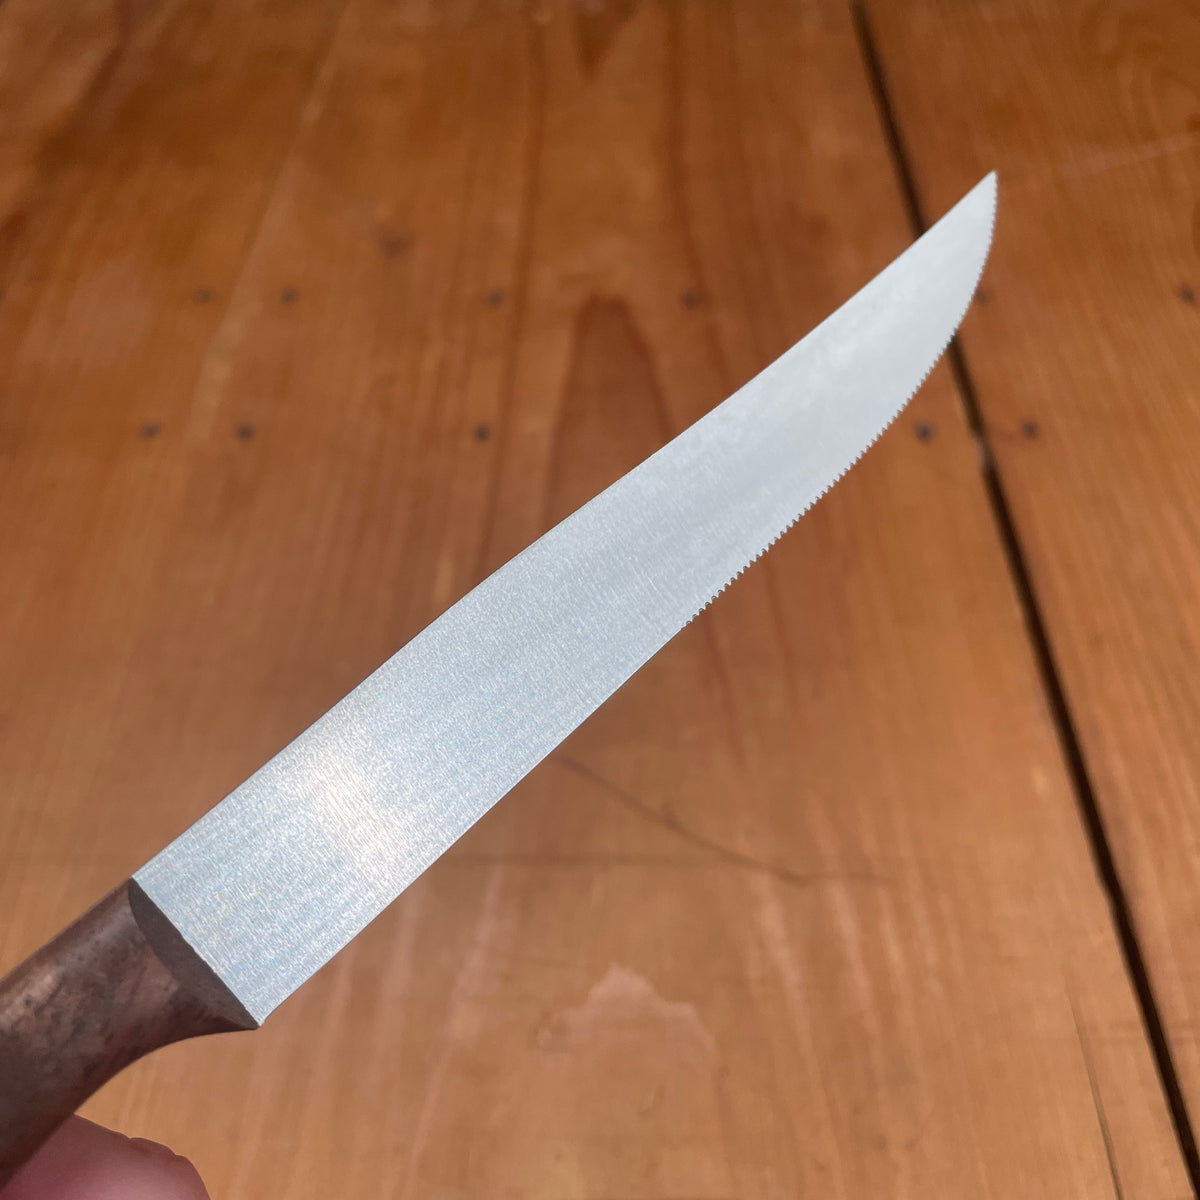 Windmühlenmesser Slim Steak Knife Stainless Walnut